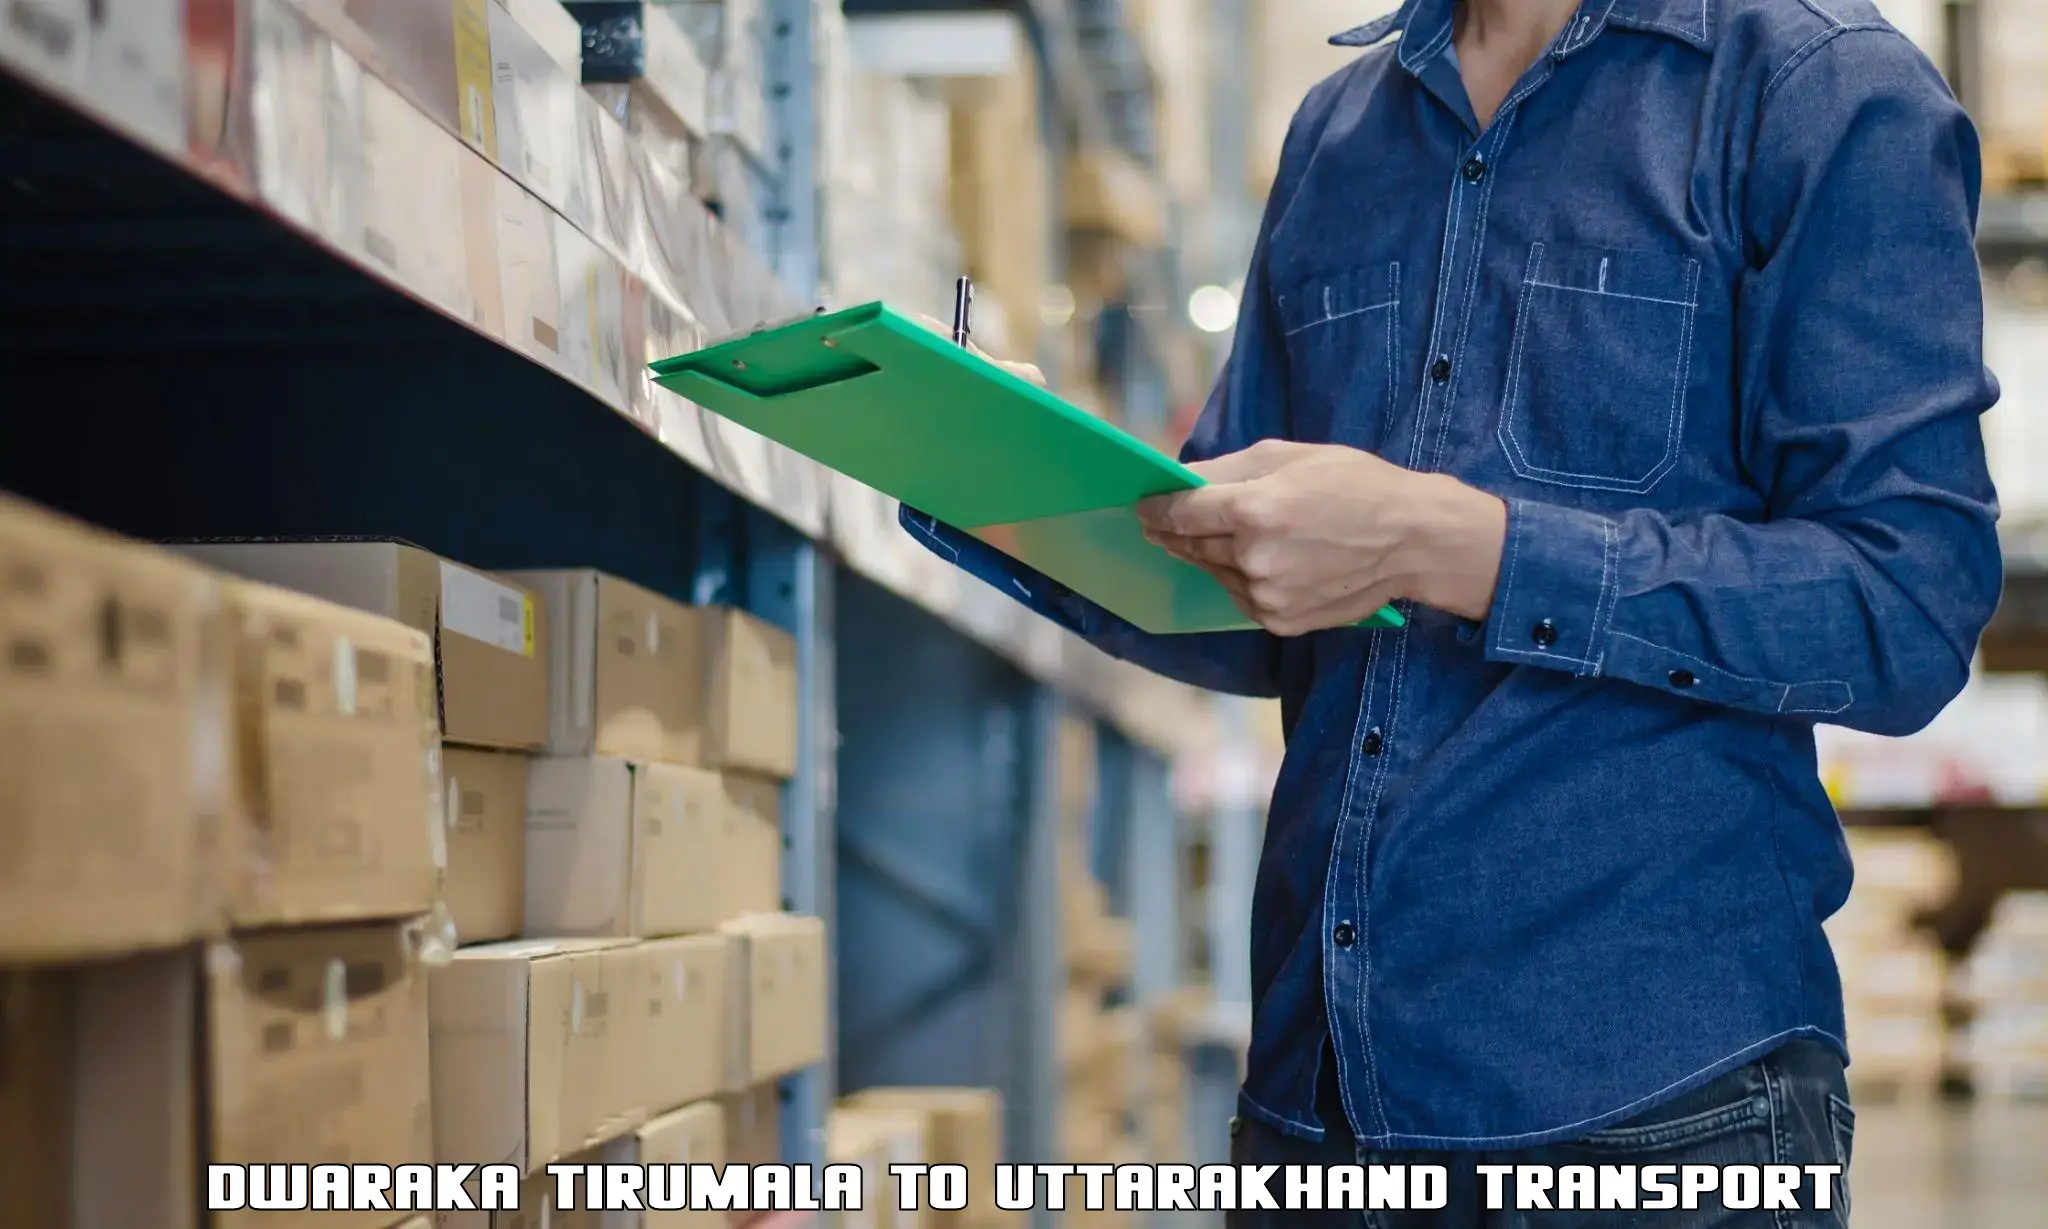 Truck transport companies in India Dwaraka Tirumala to Dwarahat